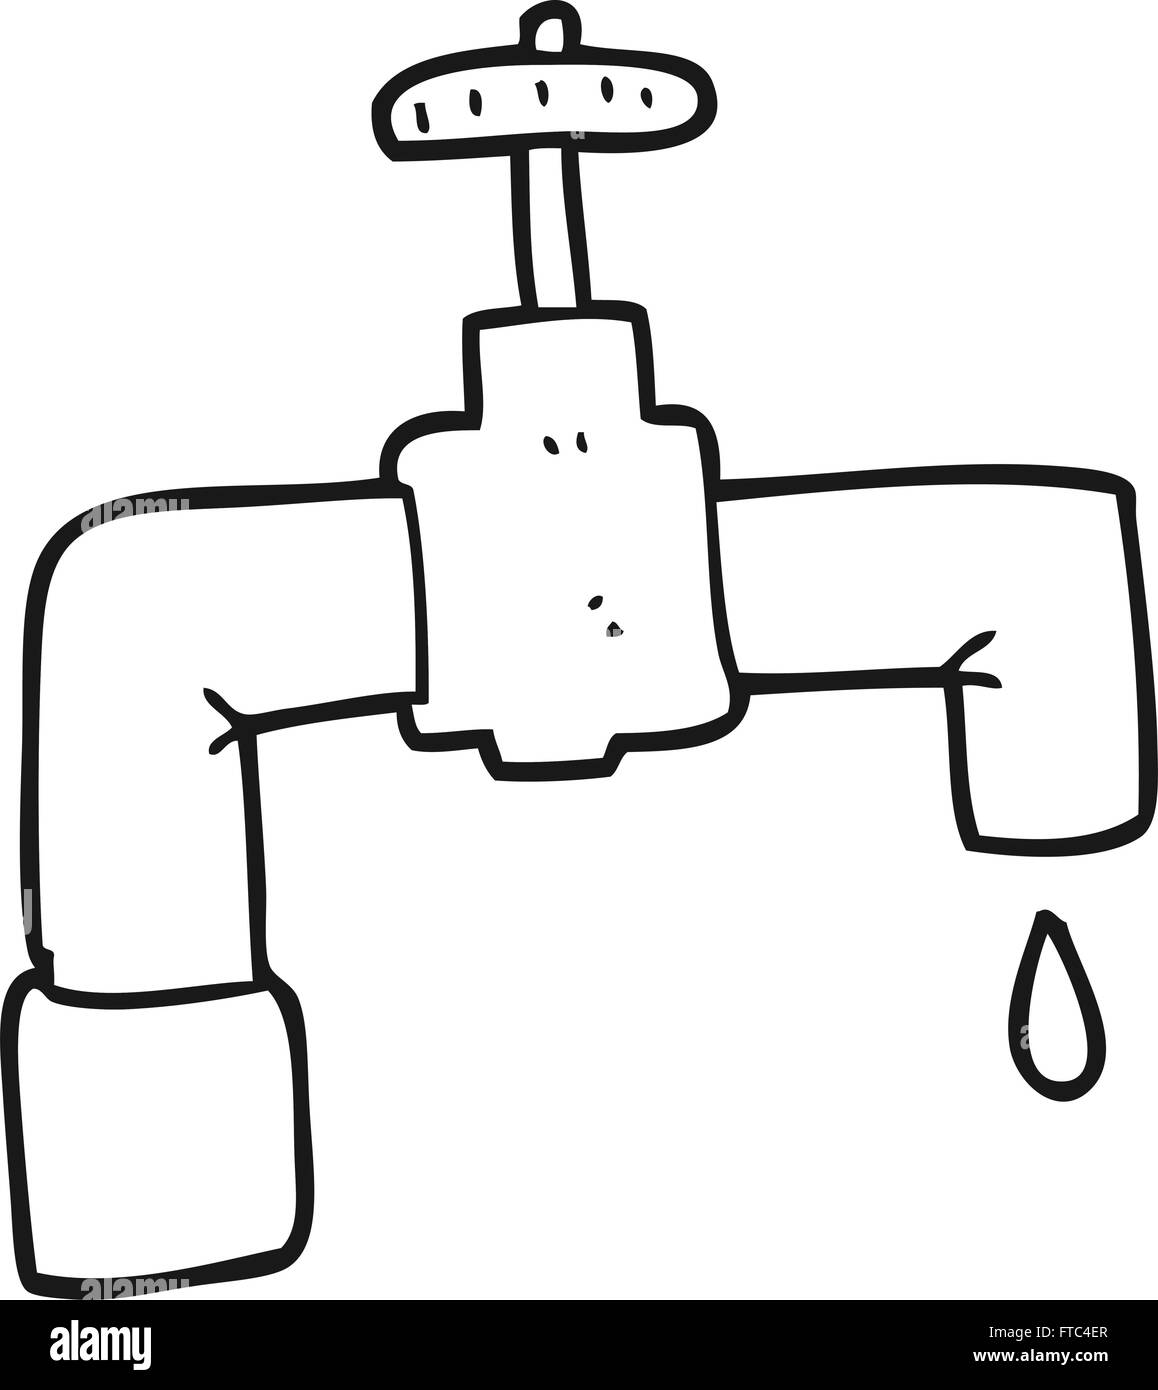 freihändig gezeichnet schwarz / weiß Cartoon tropfenden Wasserhahn  Stock-Vektorgrafik - Alamy